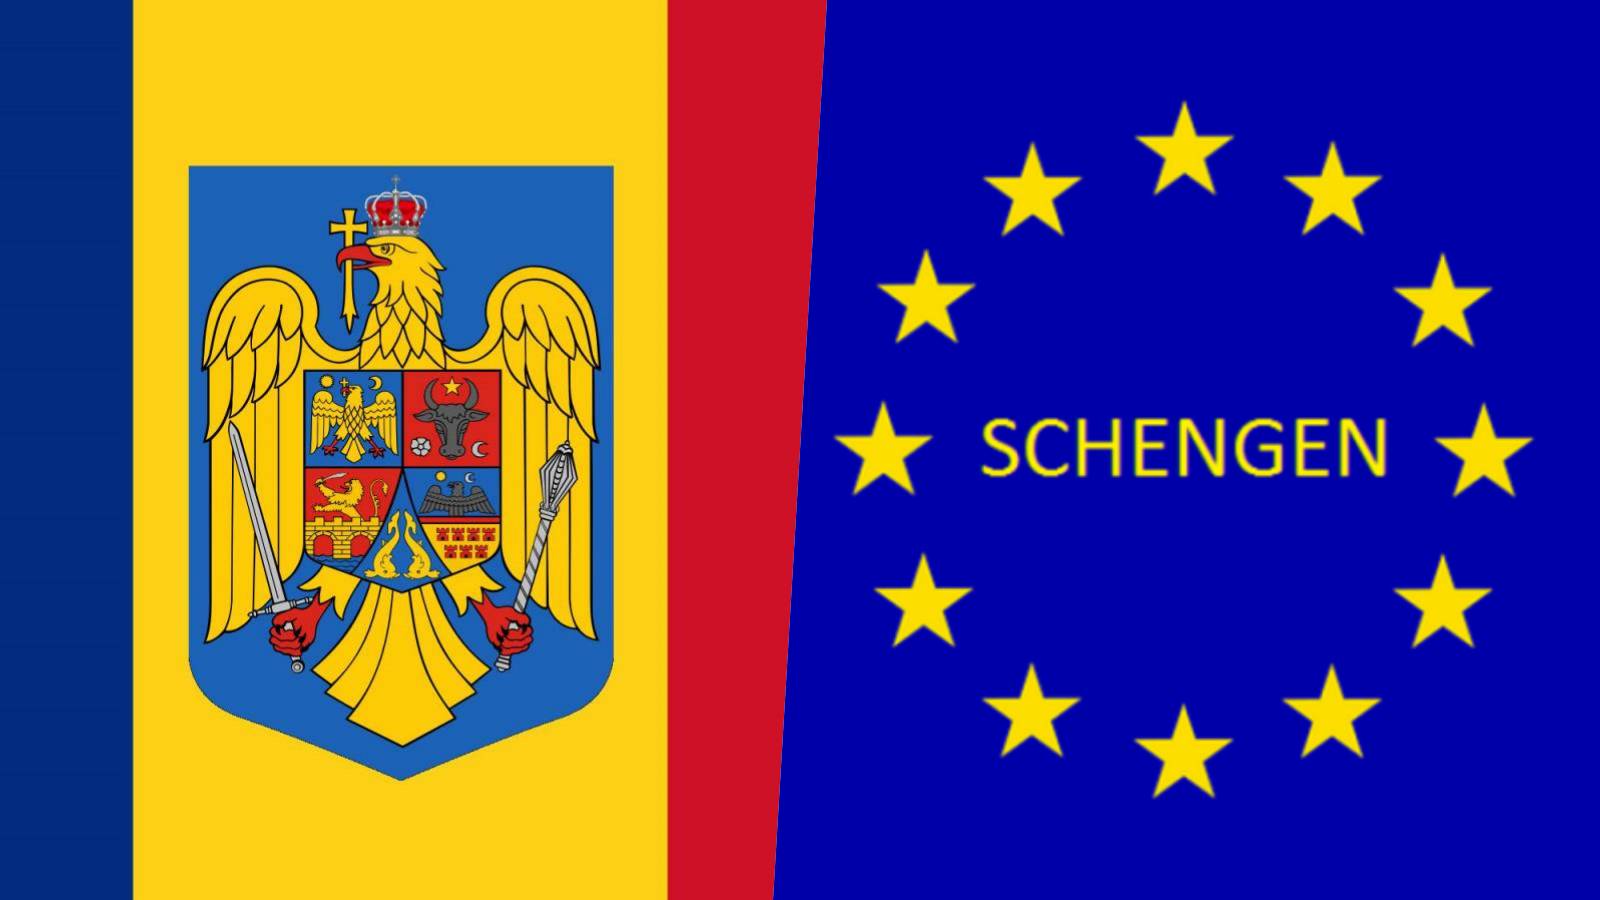 Romania: annunciate le misure ufficiali LAST MINUTE del completamento dell'adesione a Schengen